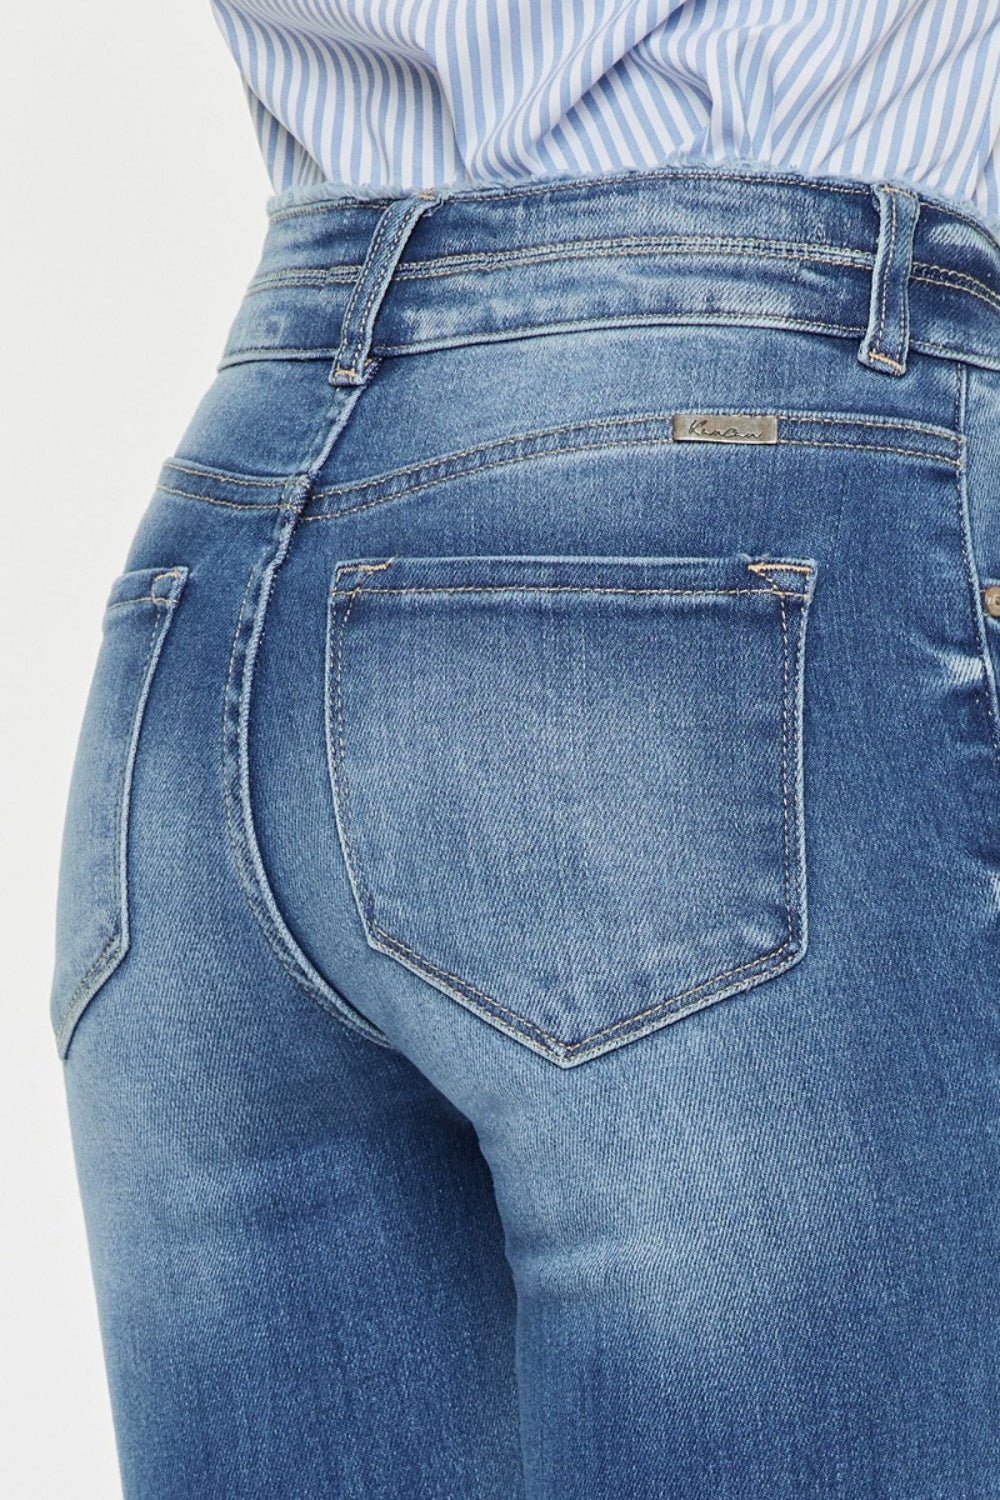 Medium Wash Distressed Raw Hem High Waist JeansJeansKancan